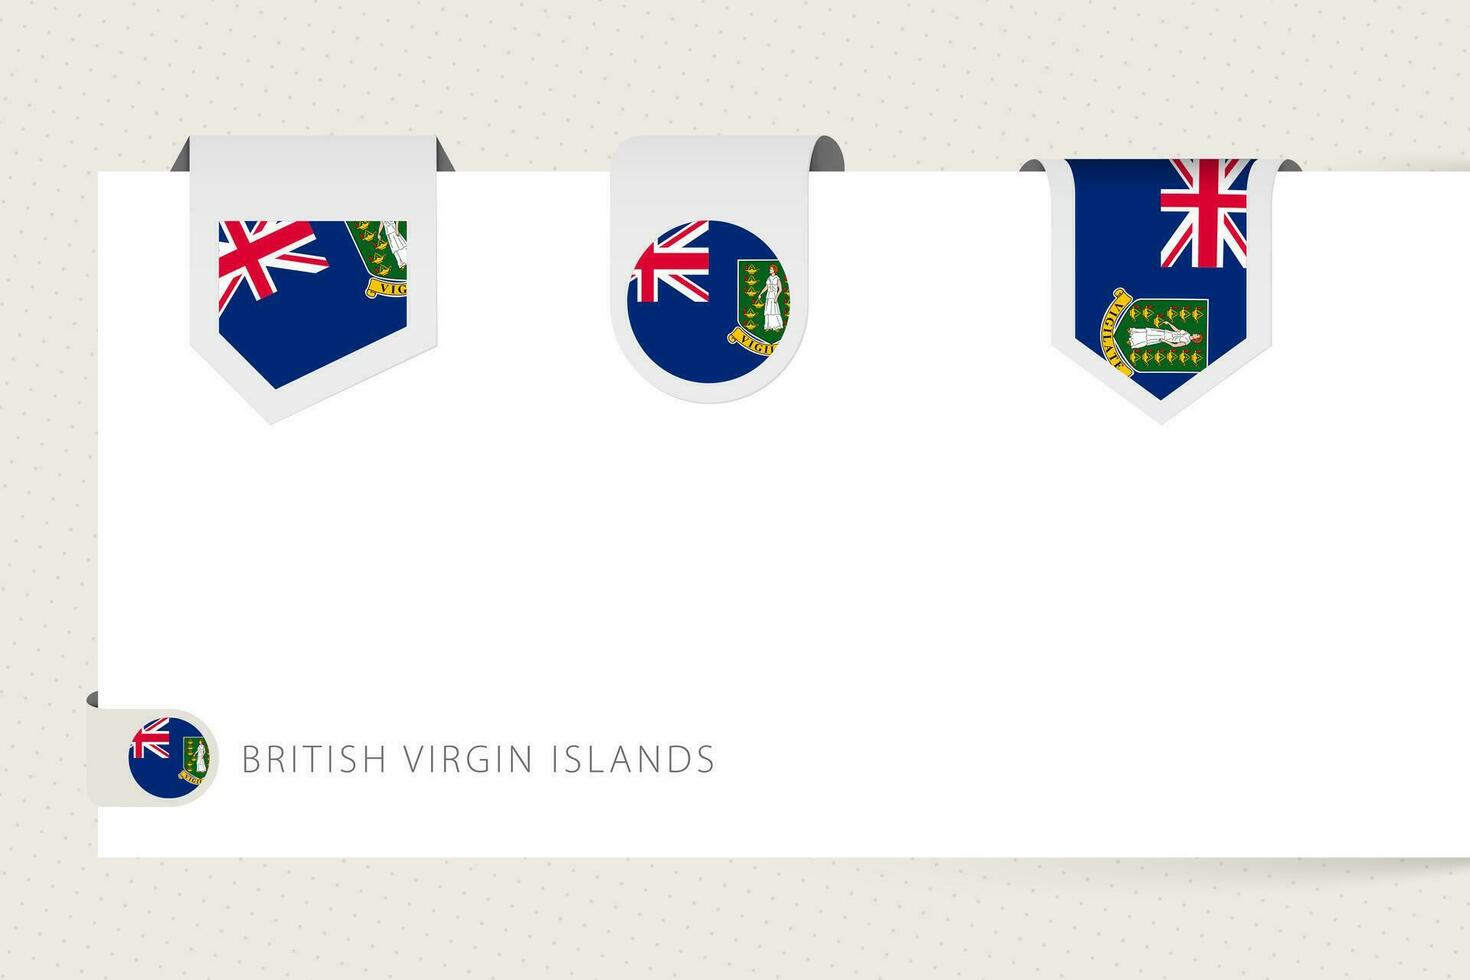 etiqueta bandera colección de británico Virgen islas en diferente forma. cinta bandera modelo de británico Virgen islas vector